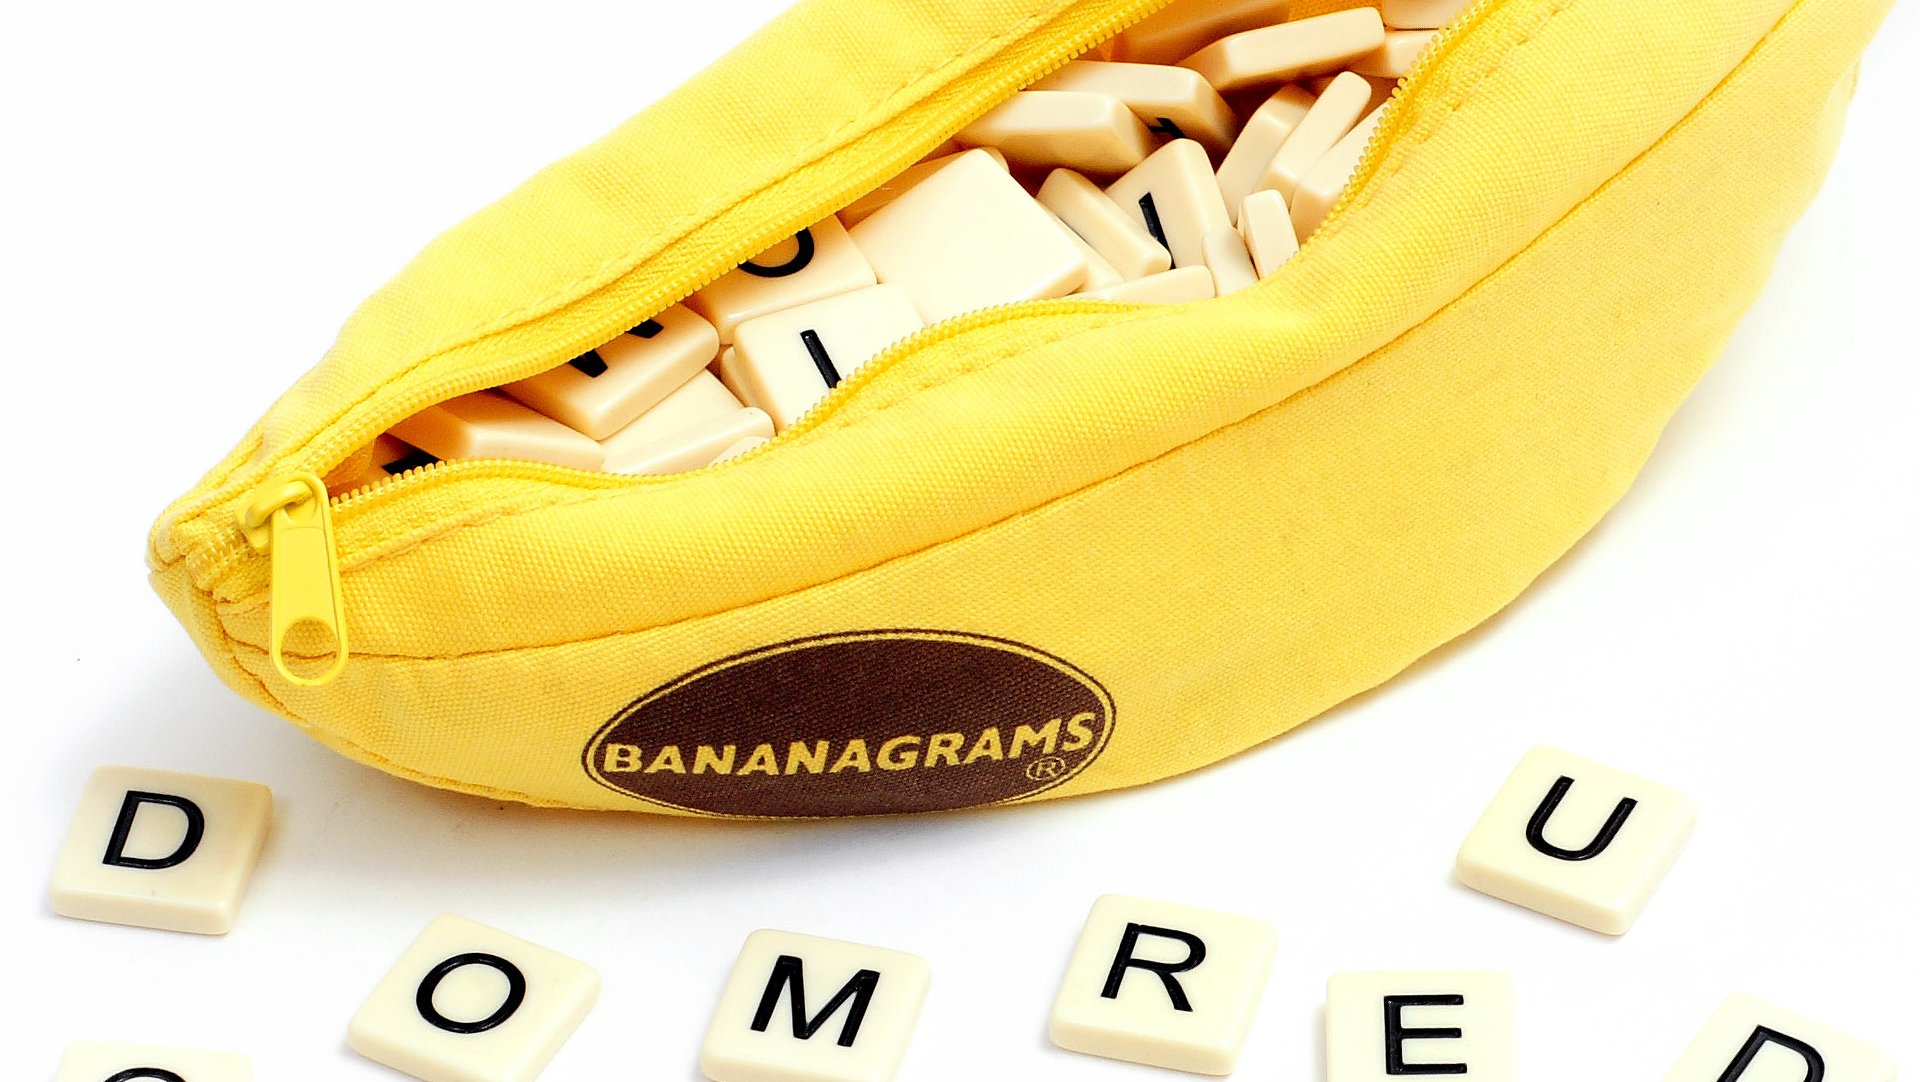 melhores jogos de tabuleiro para dois jogadores – bolsa de bananas em forma de banana, com algumas peças espalhadas na frente dela